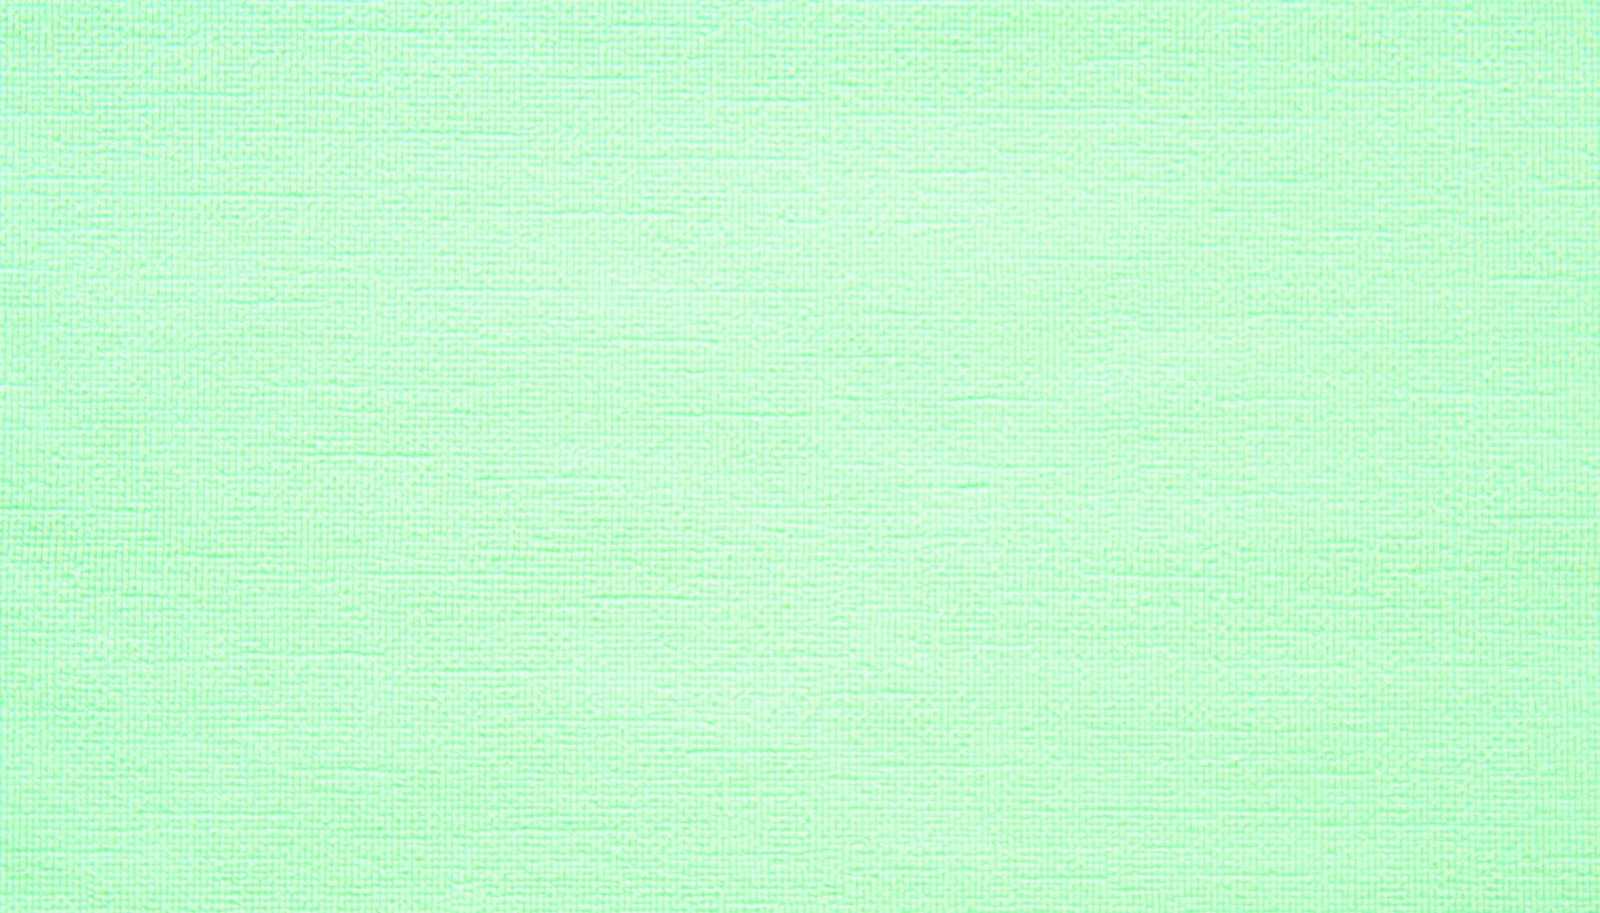 Mint Green Wallpapers Wallpaper Cave HD Wallpapers Download Free Images Wallpaper [wallpaper981.blogspot.com]